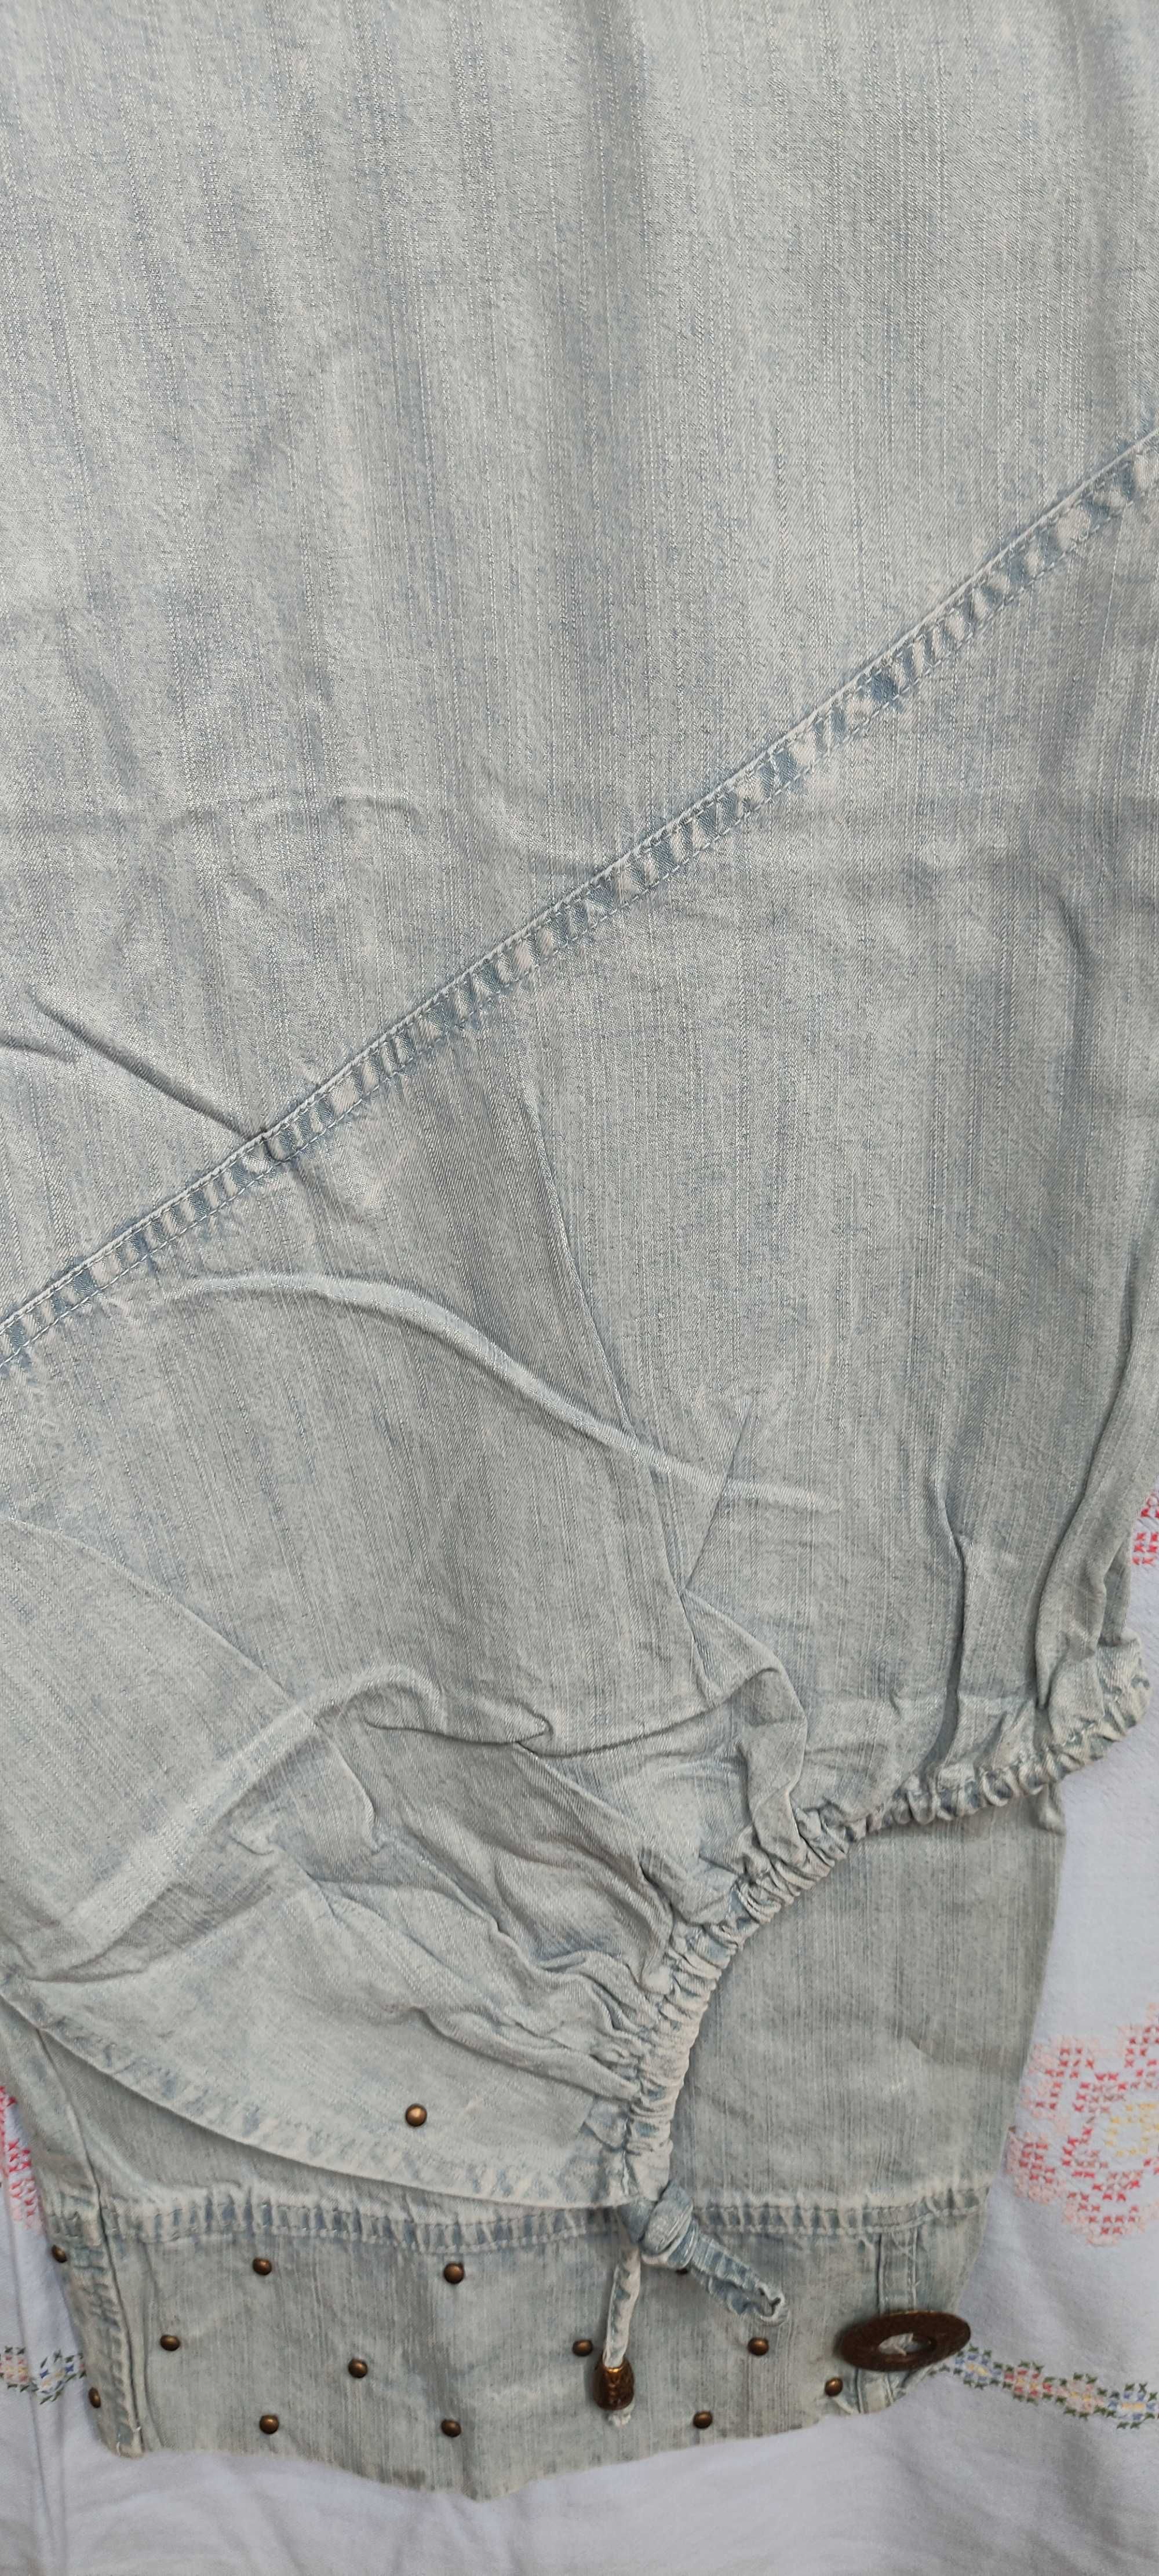 Женские джинсовые бриджи капри батал Дюран DURAN (Турция). Размер 54.